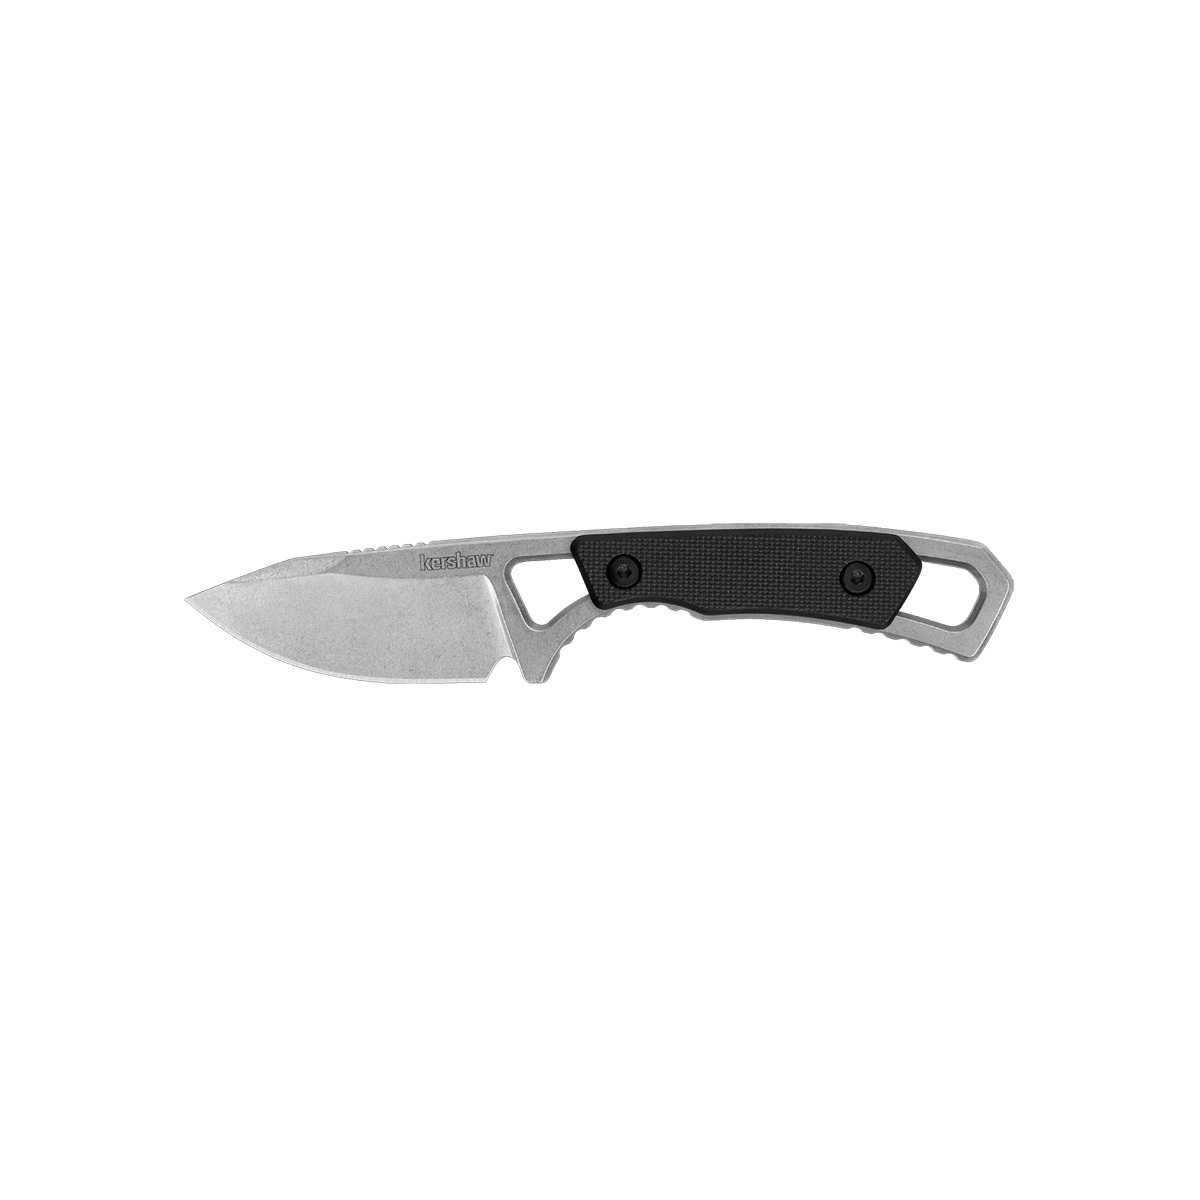 Нож Kershaw Brace 2085, сталь 8Cr13MoV, рукоять G-10